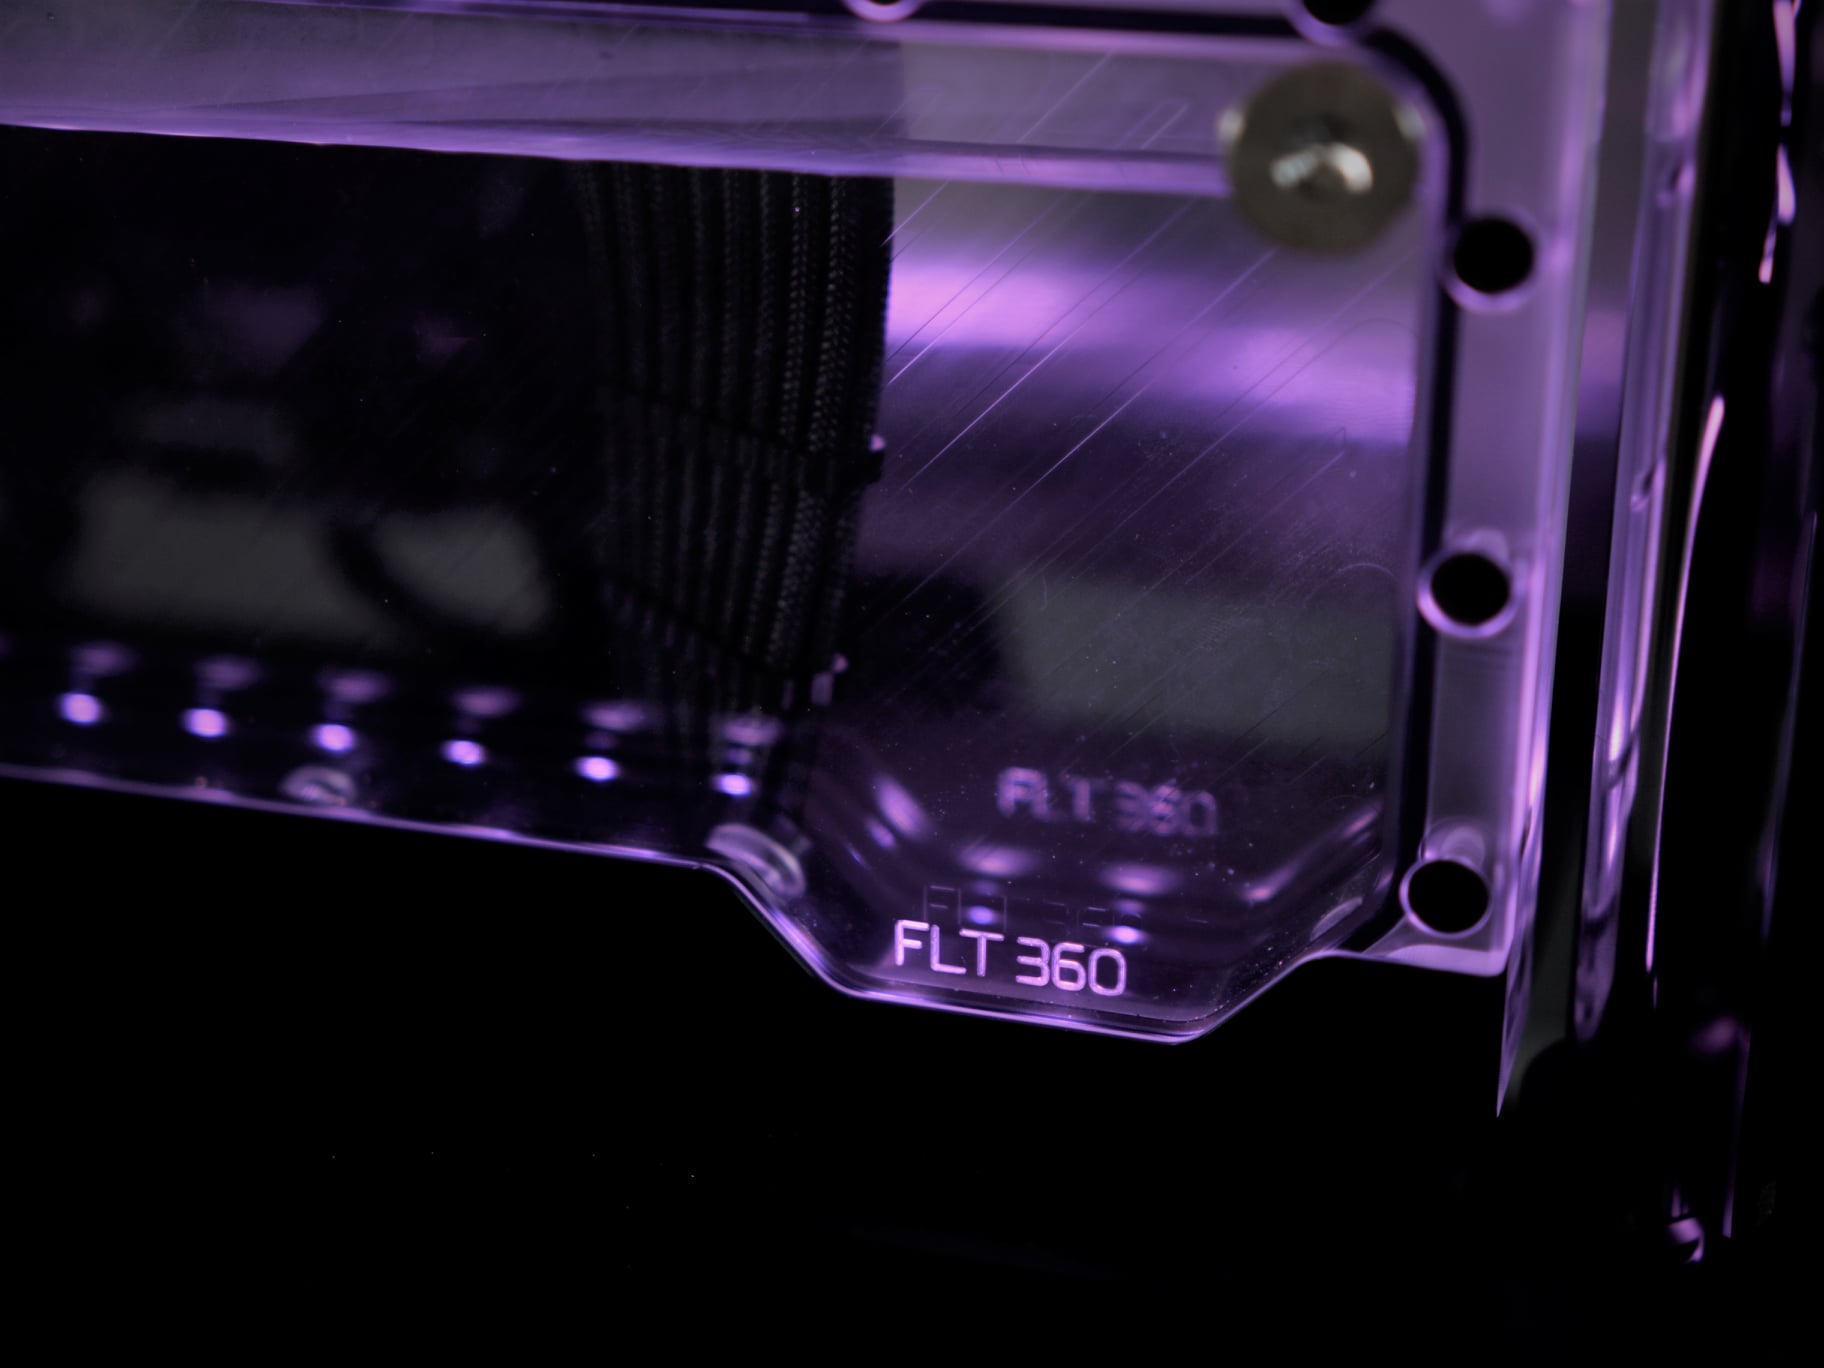 水冷电脑：InWin迎广925机箱简洁水冷电脑MOD黑、淡紫配色图片